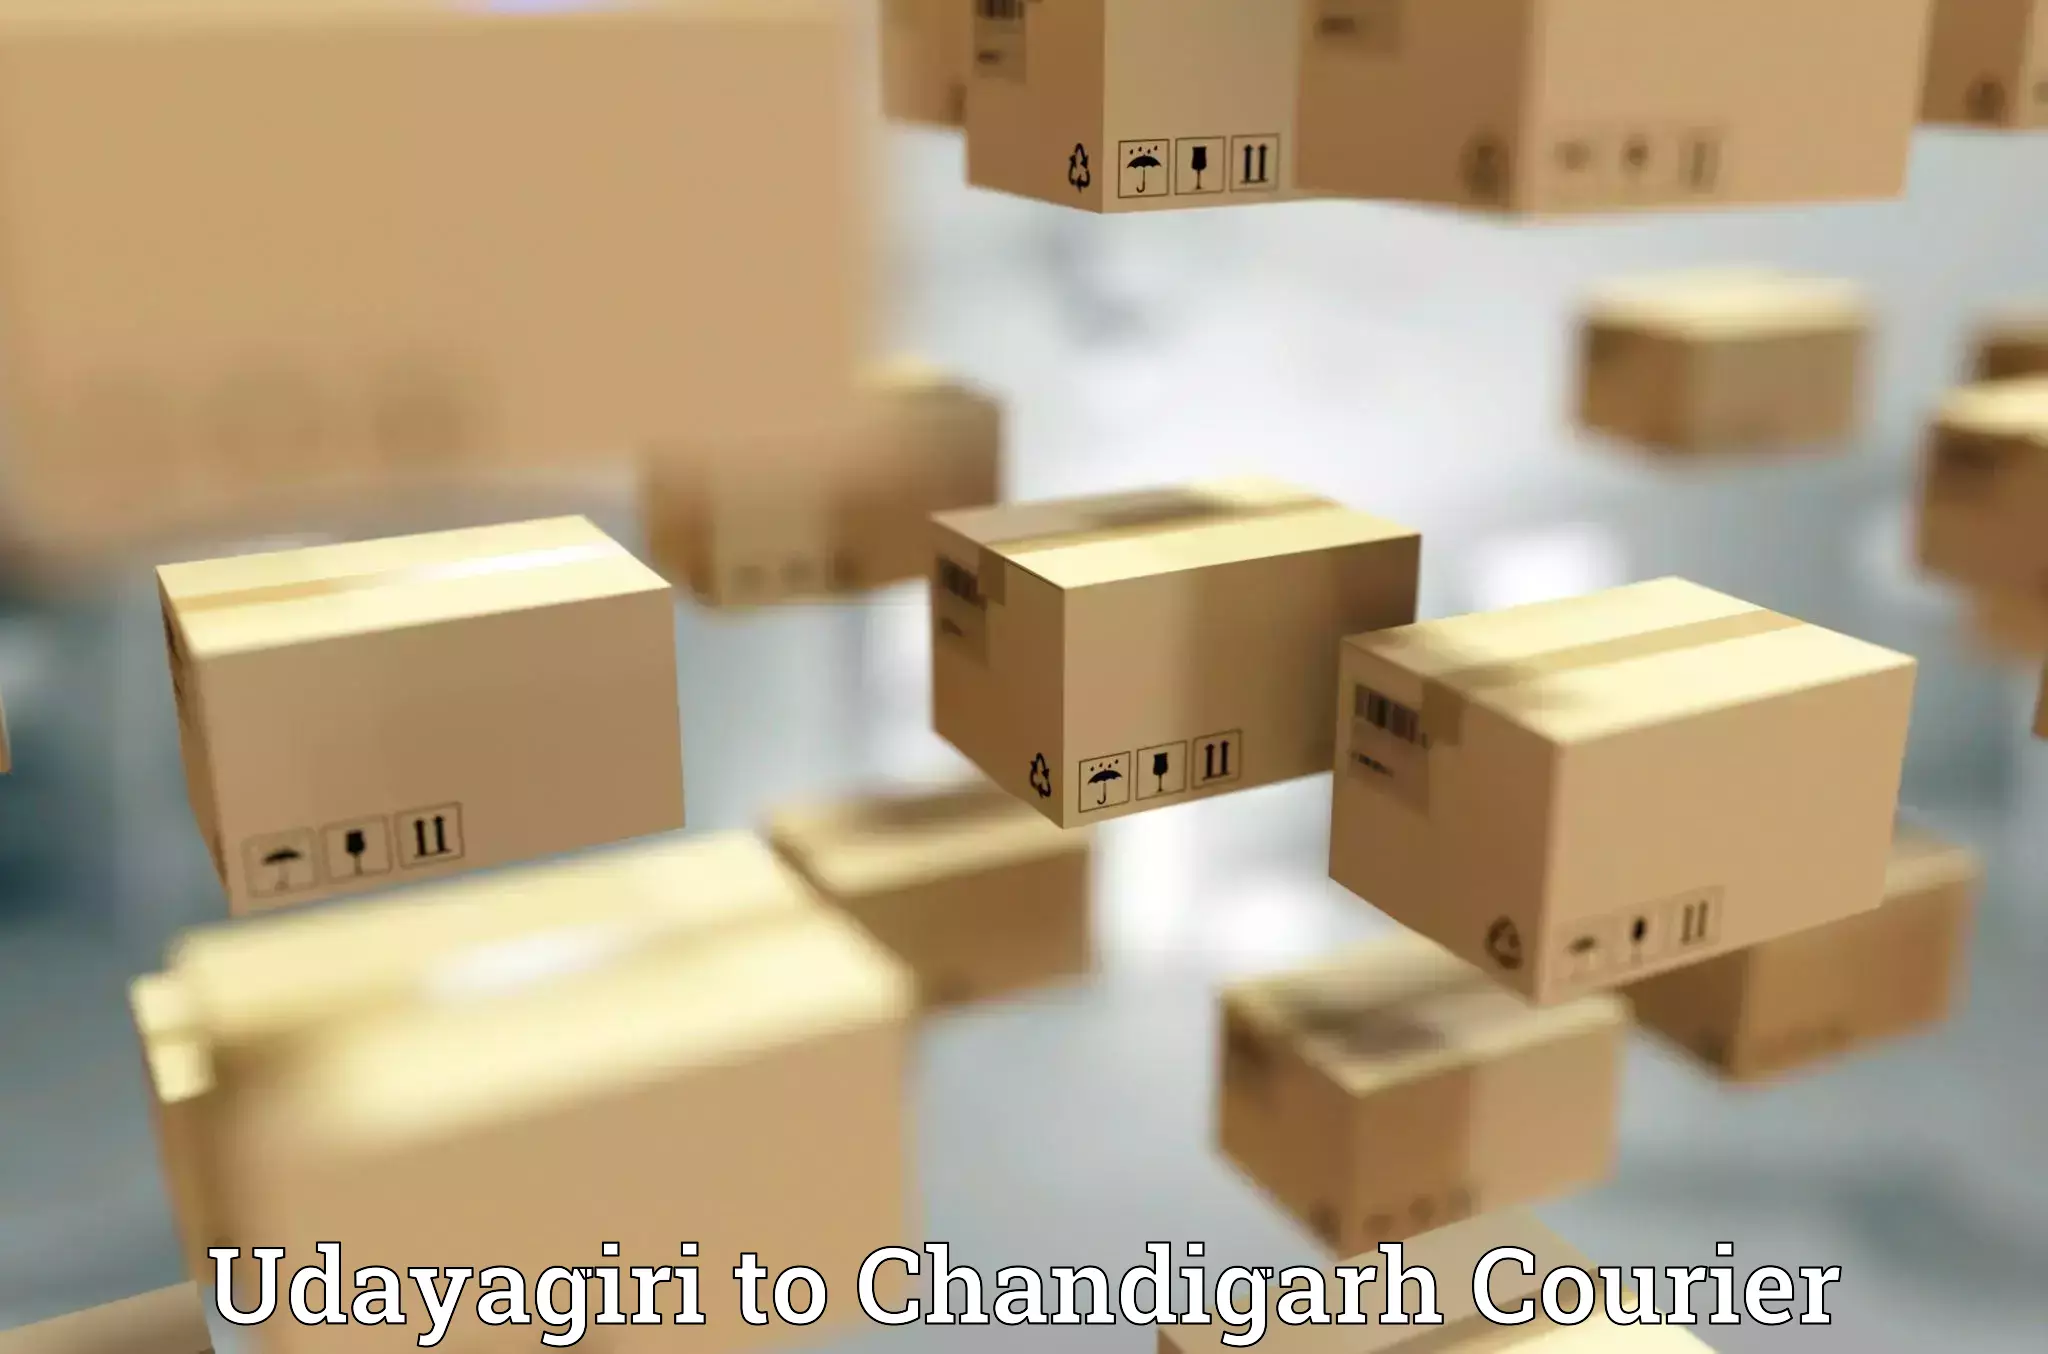 Luggage delivery network Udayagiri to Chandigarh